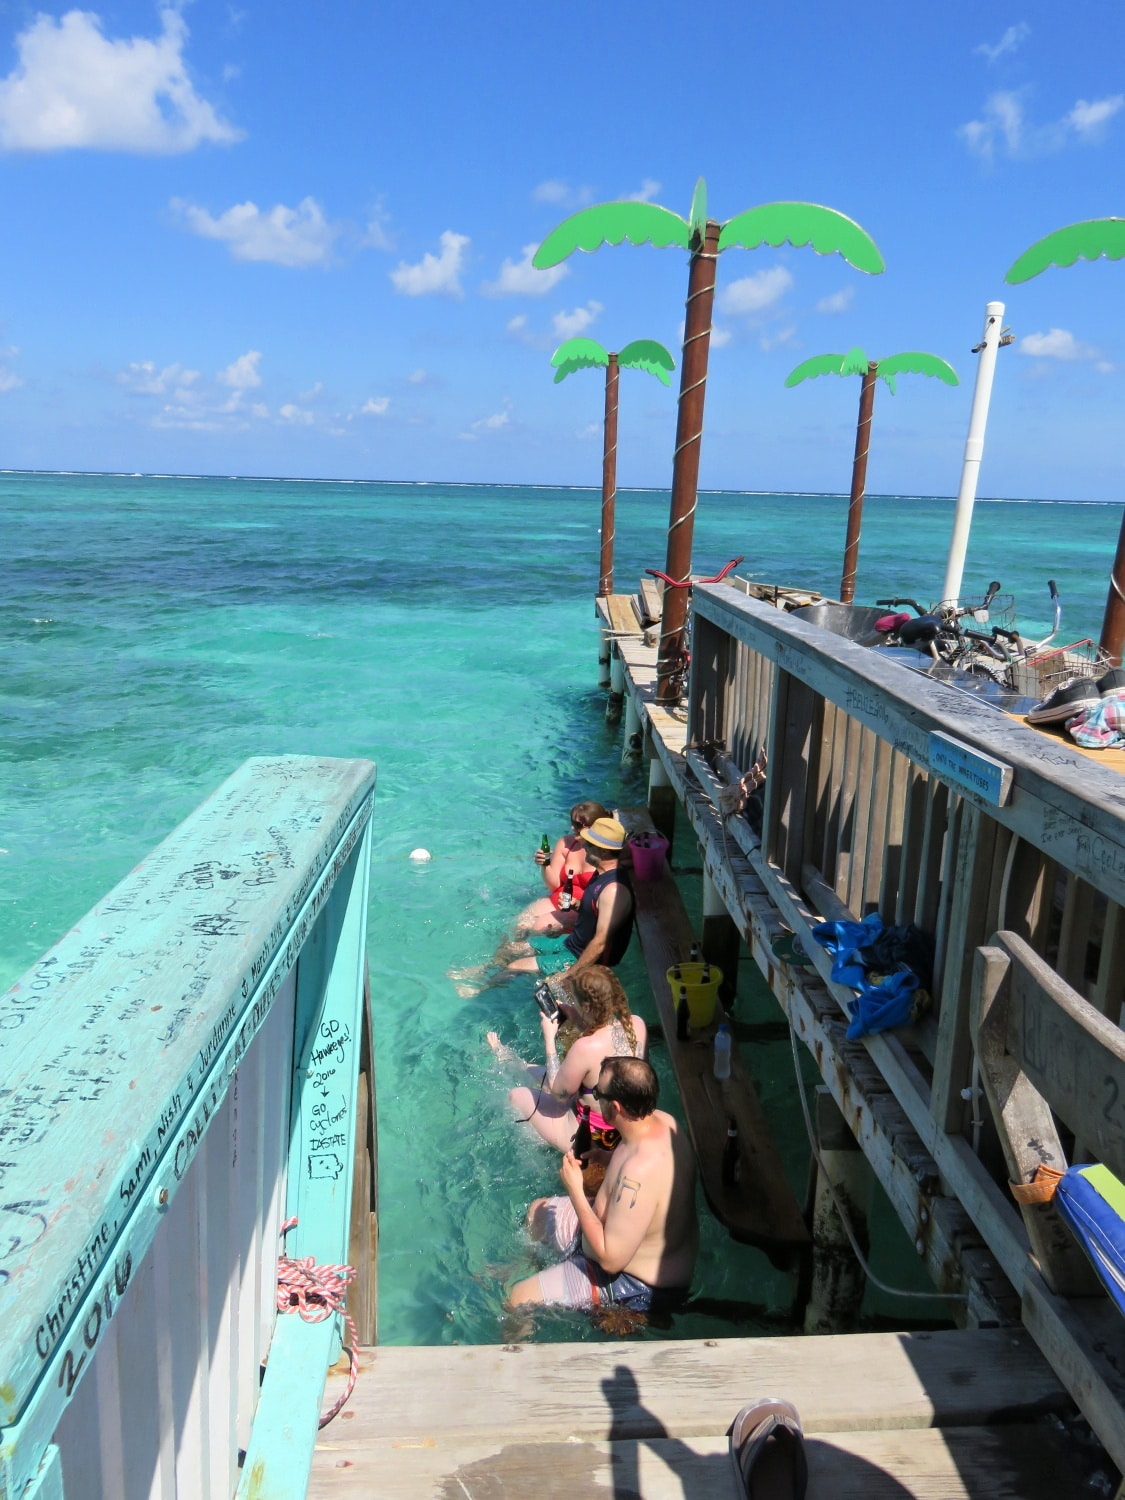 Water seating at Palapa Bar, San Pedro, Belize